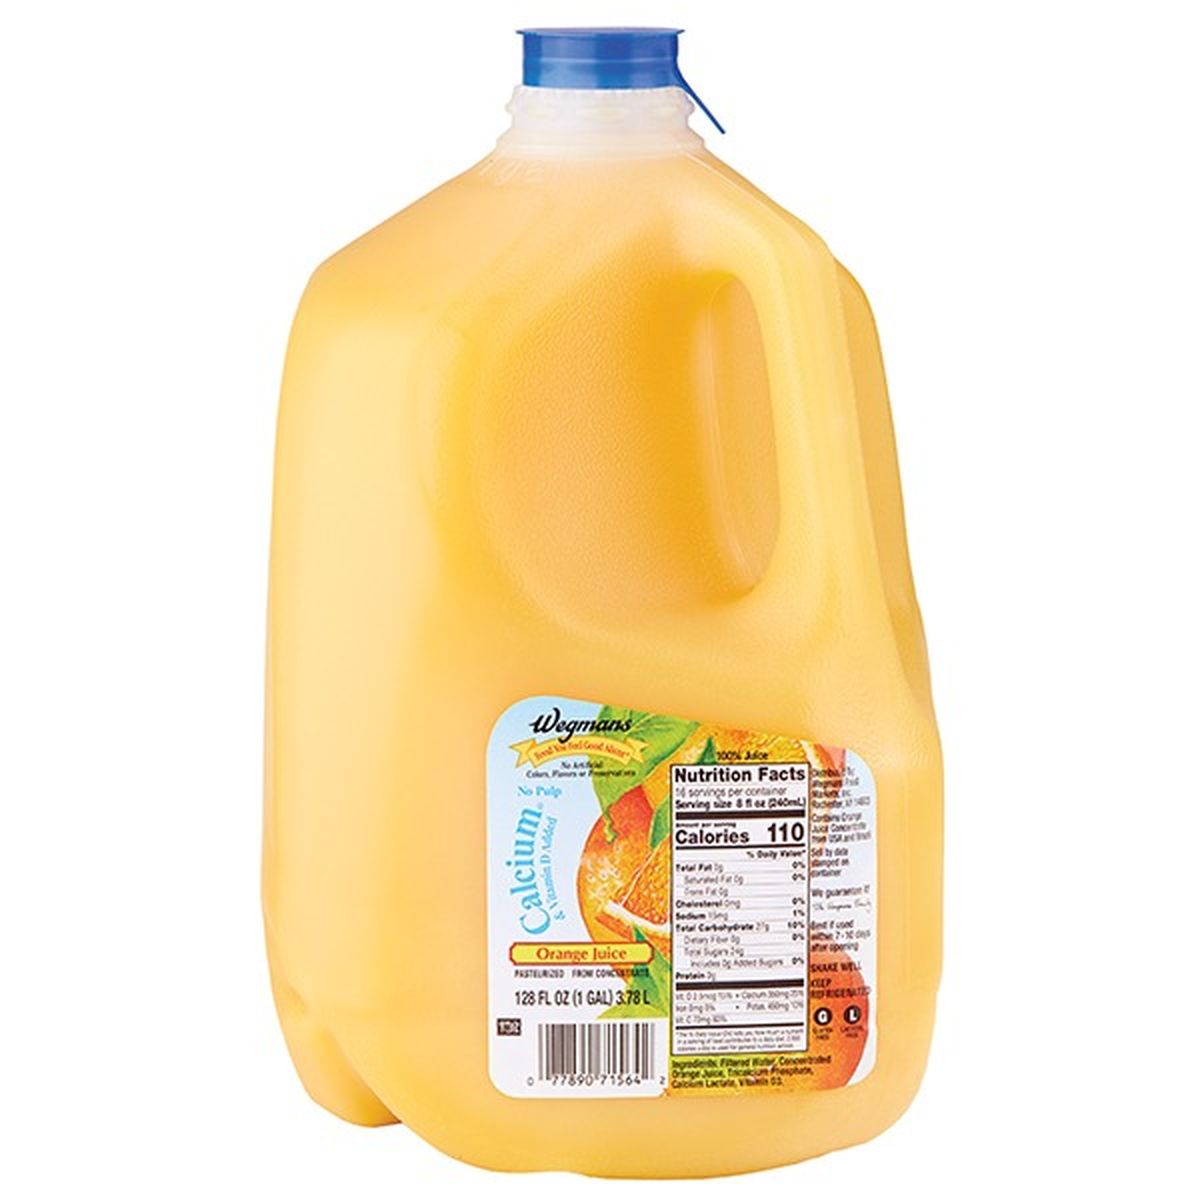 Calories in Wegmans Orange Juice, Calcium Plus Vitamin D, From Concentrate, FAMILY PACK